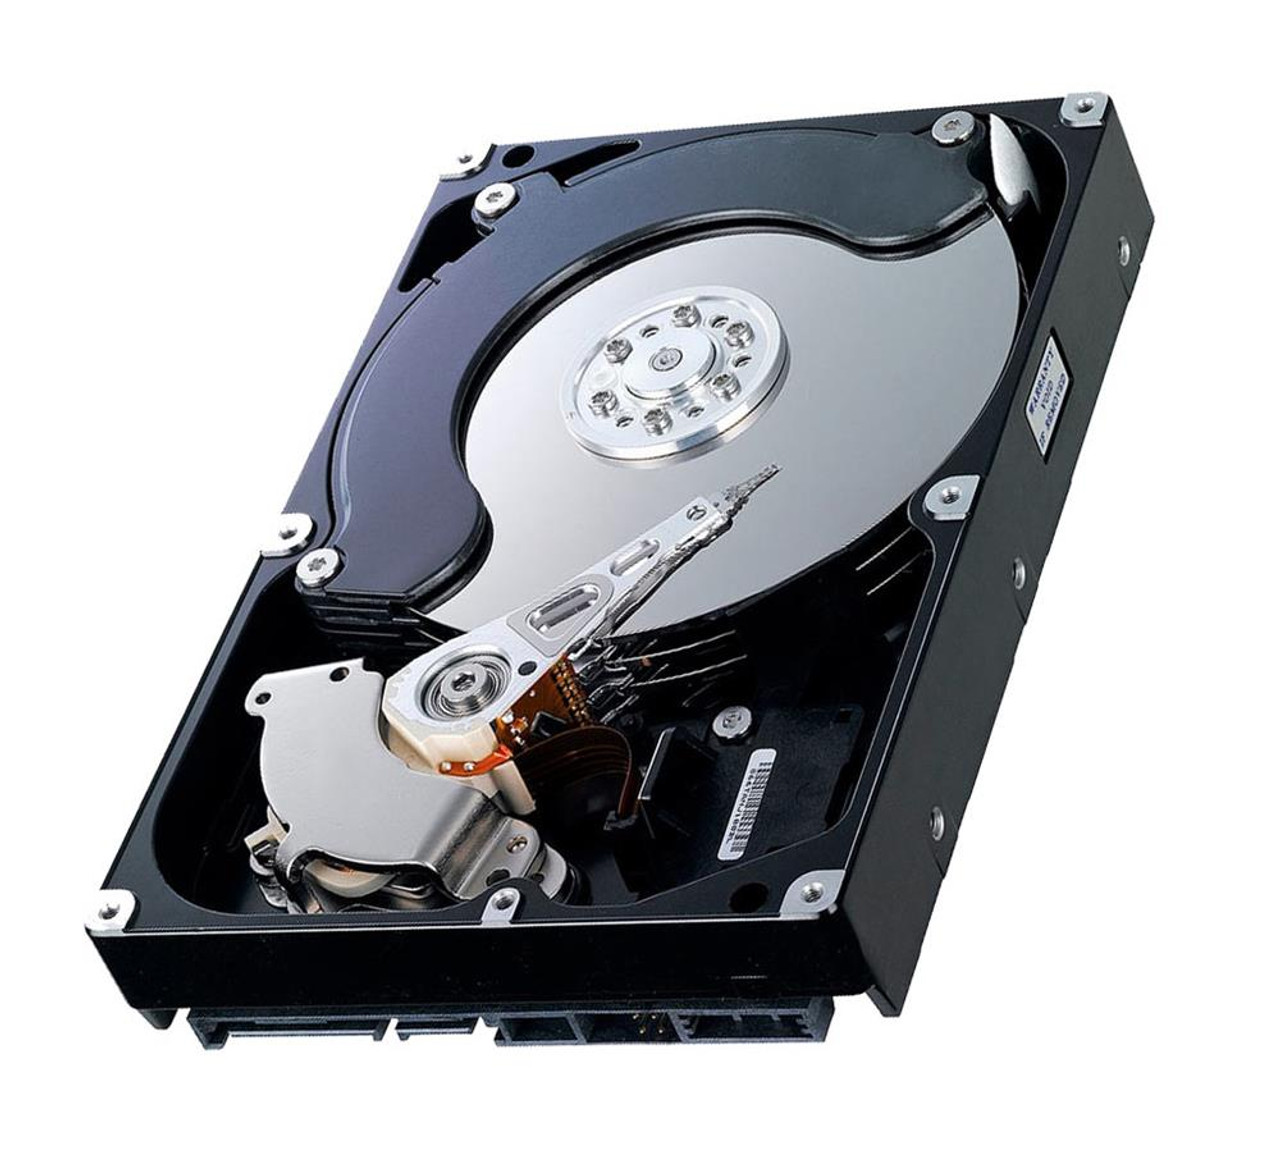 340-9283 - Dell 80GB 7200RPM ATA/IDE 3.5-inch Hard Disk Drive